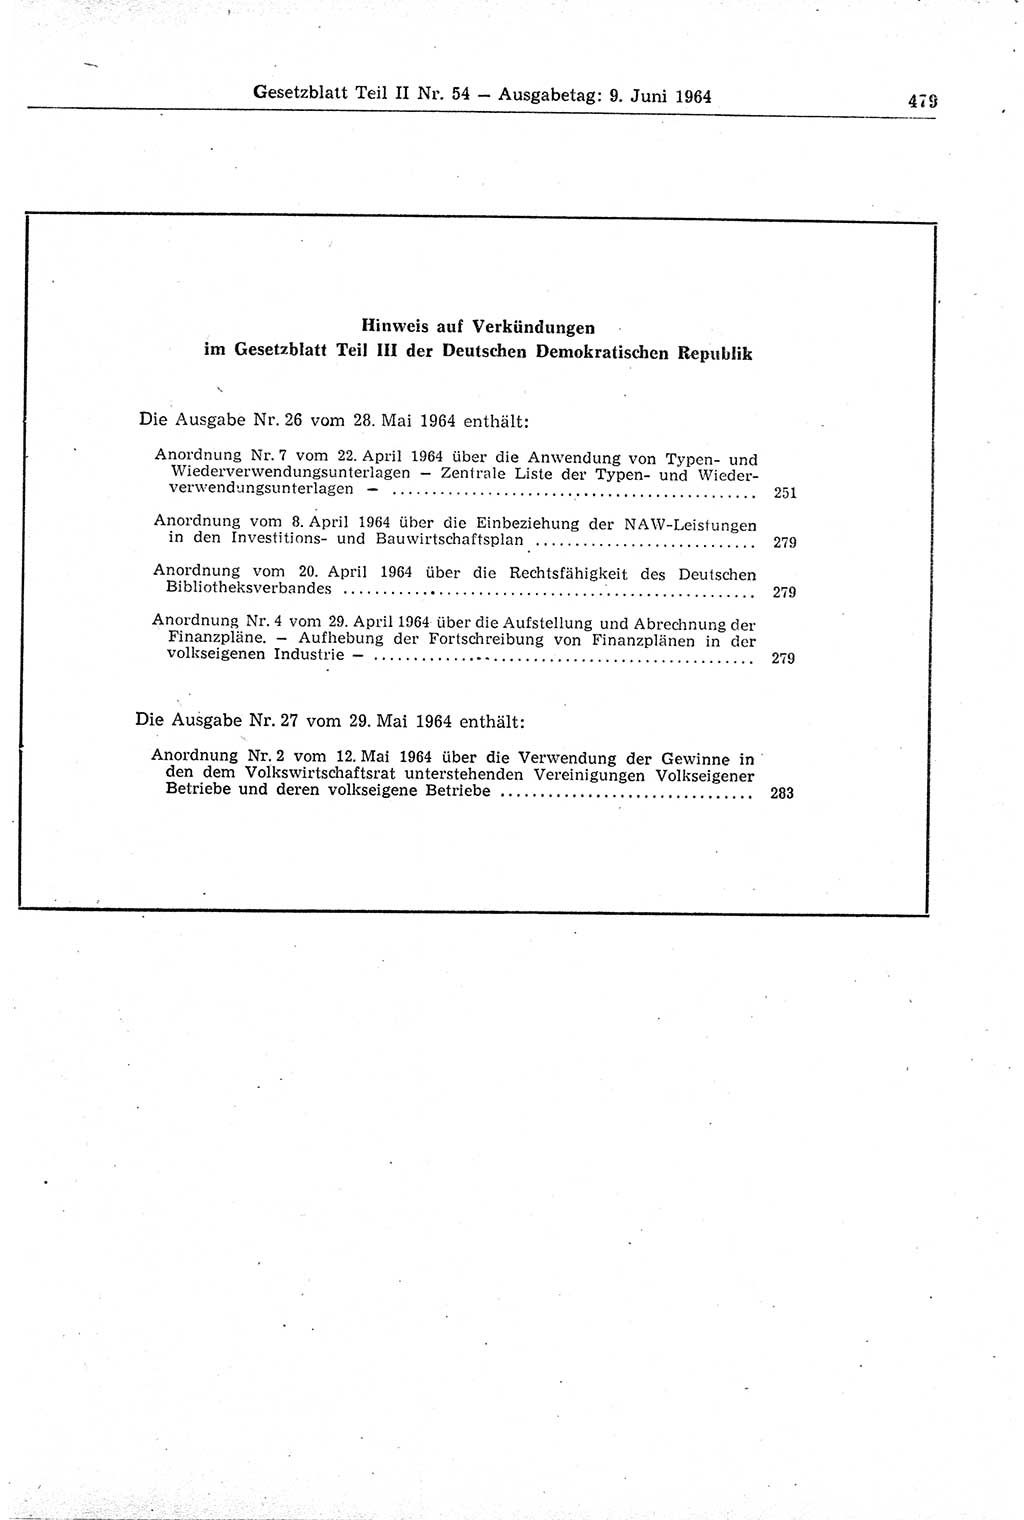 Gesetzblatt (GBl.) der Deutschen Demokratischen Republik (DDR) Teil ⅠⅠ 1964, Seite 479 (GBl. DDR ⅠⅠ 1964, S. 479)